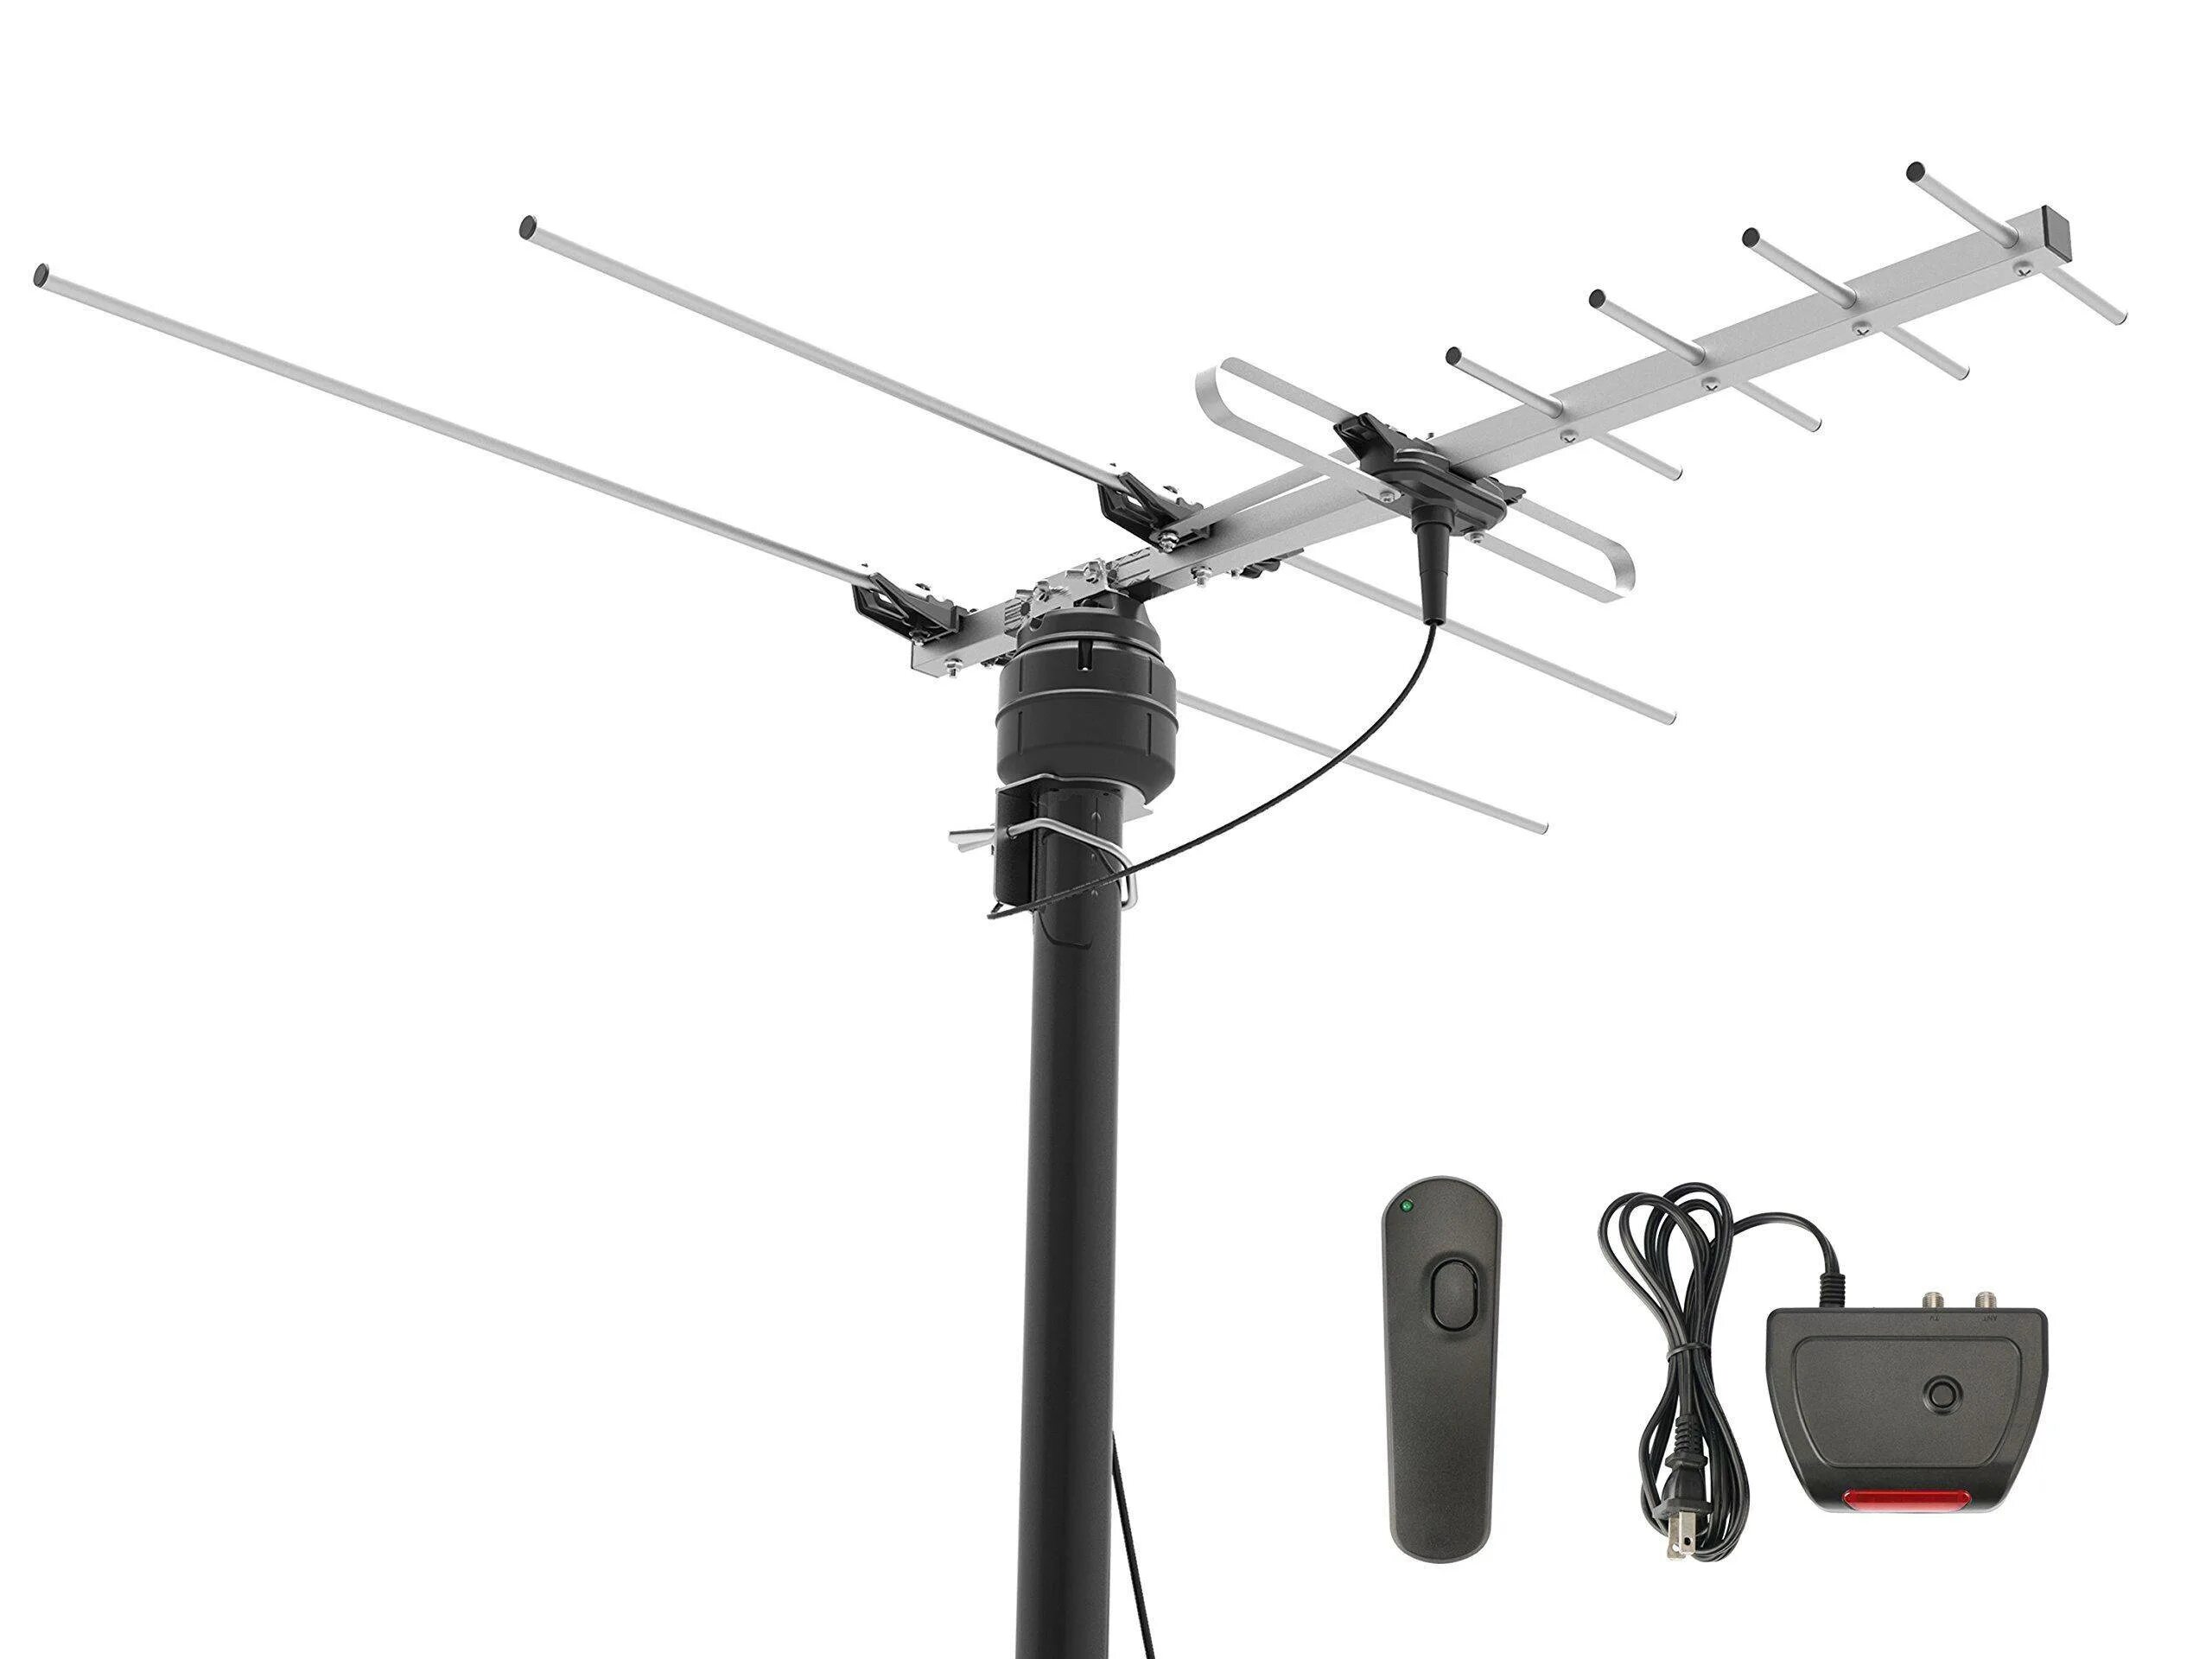 Куплю домашнюю антенну для телевизора. VHF антенна ДЛС 136.4. Антенна d4 UHF. Антенна для 754 МГЦ для цифрового для слабого сигнала.